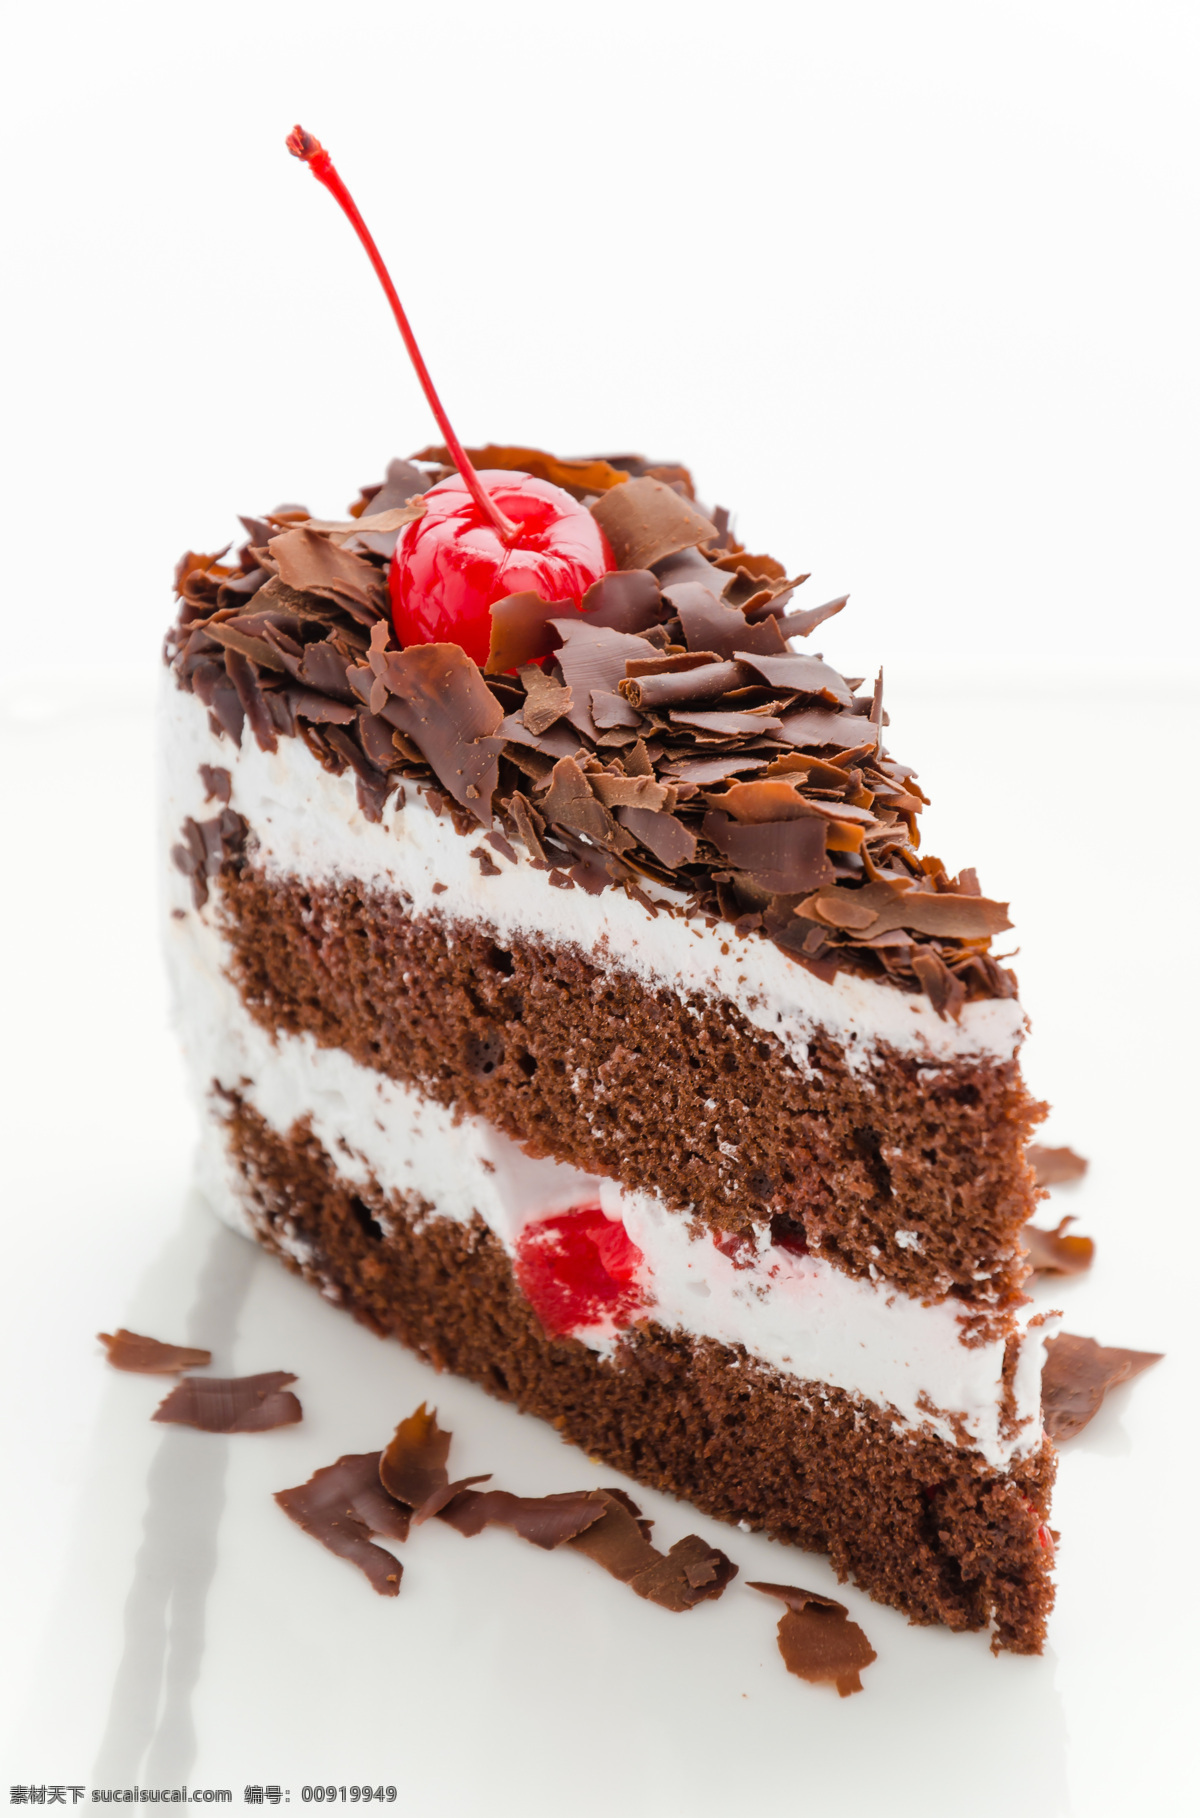 婚礼蛋糕 蛋糕 点心 创意蛋糕 巧克力蛋糕 奶油 礼品蛋糕 美食 西餐美食 餐饮美食